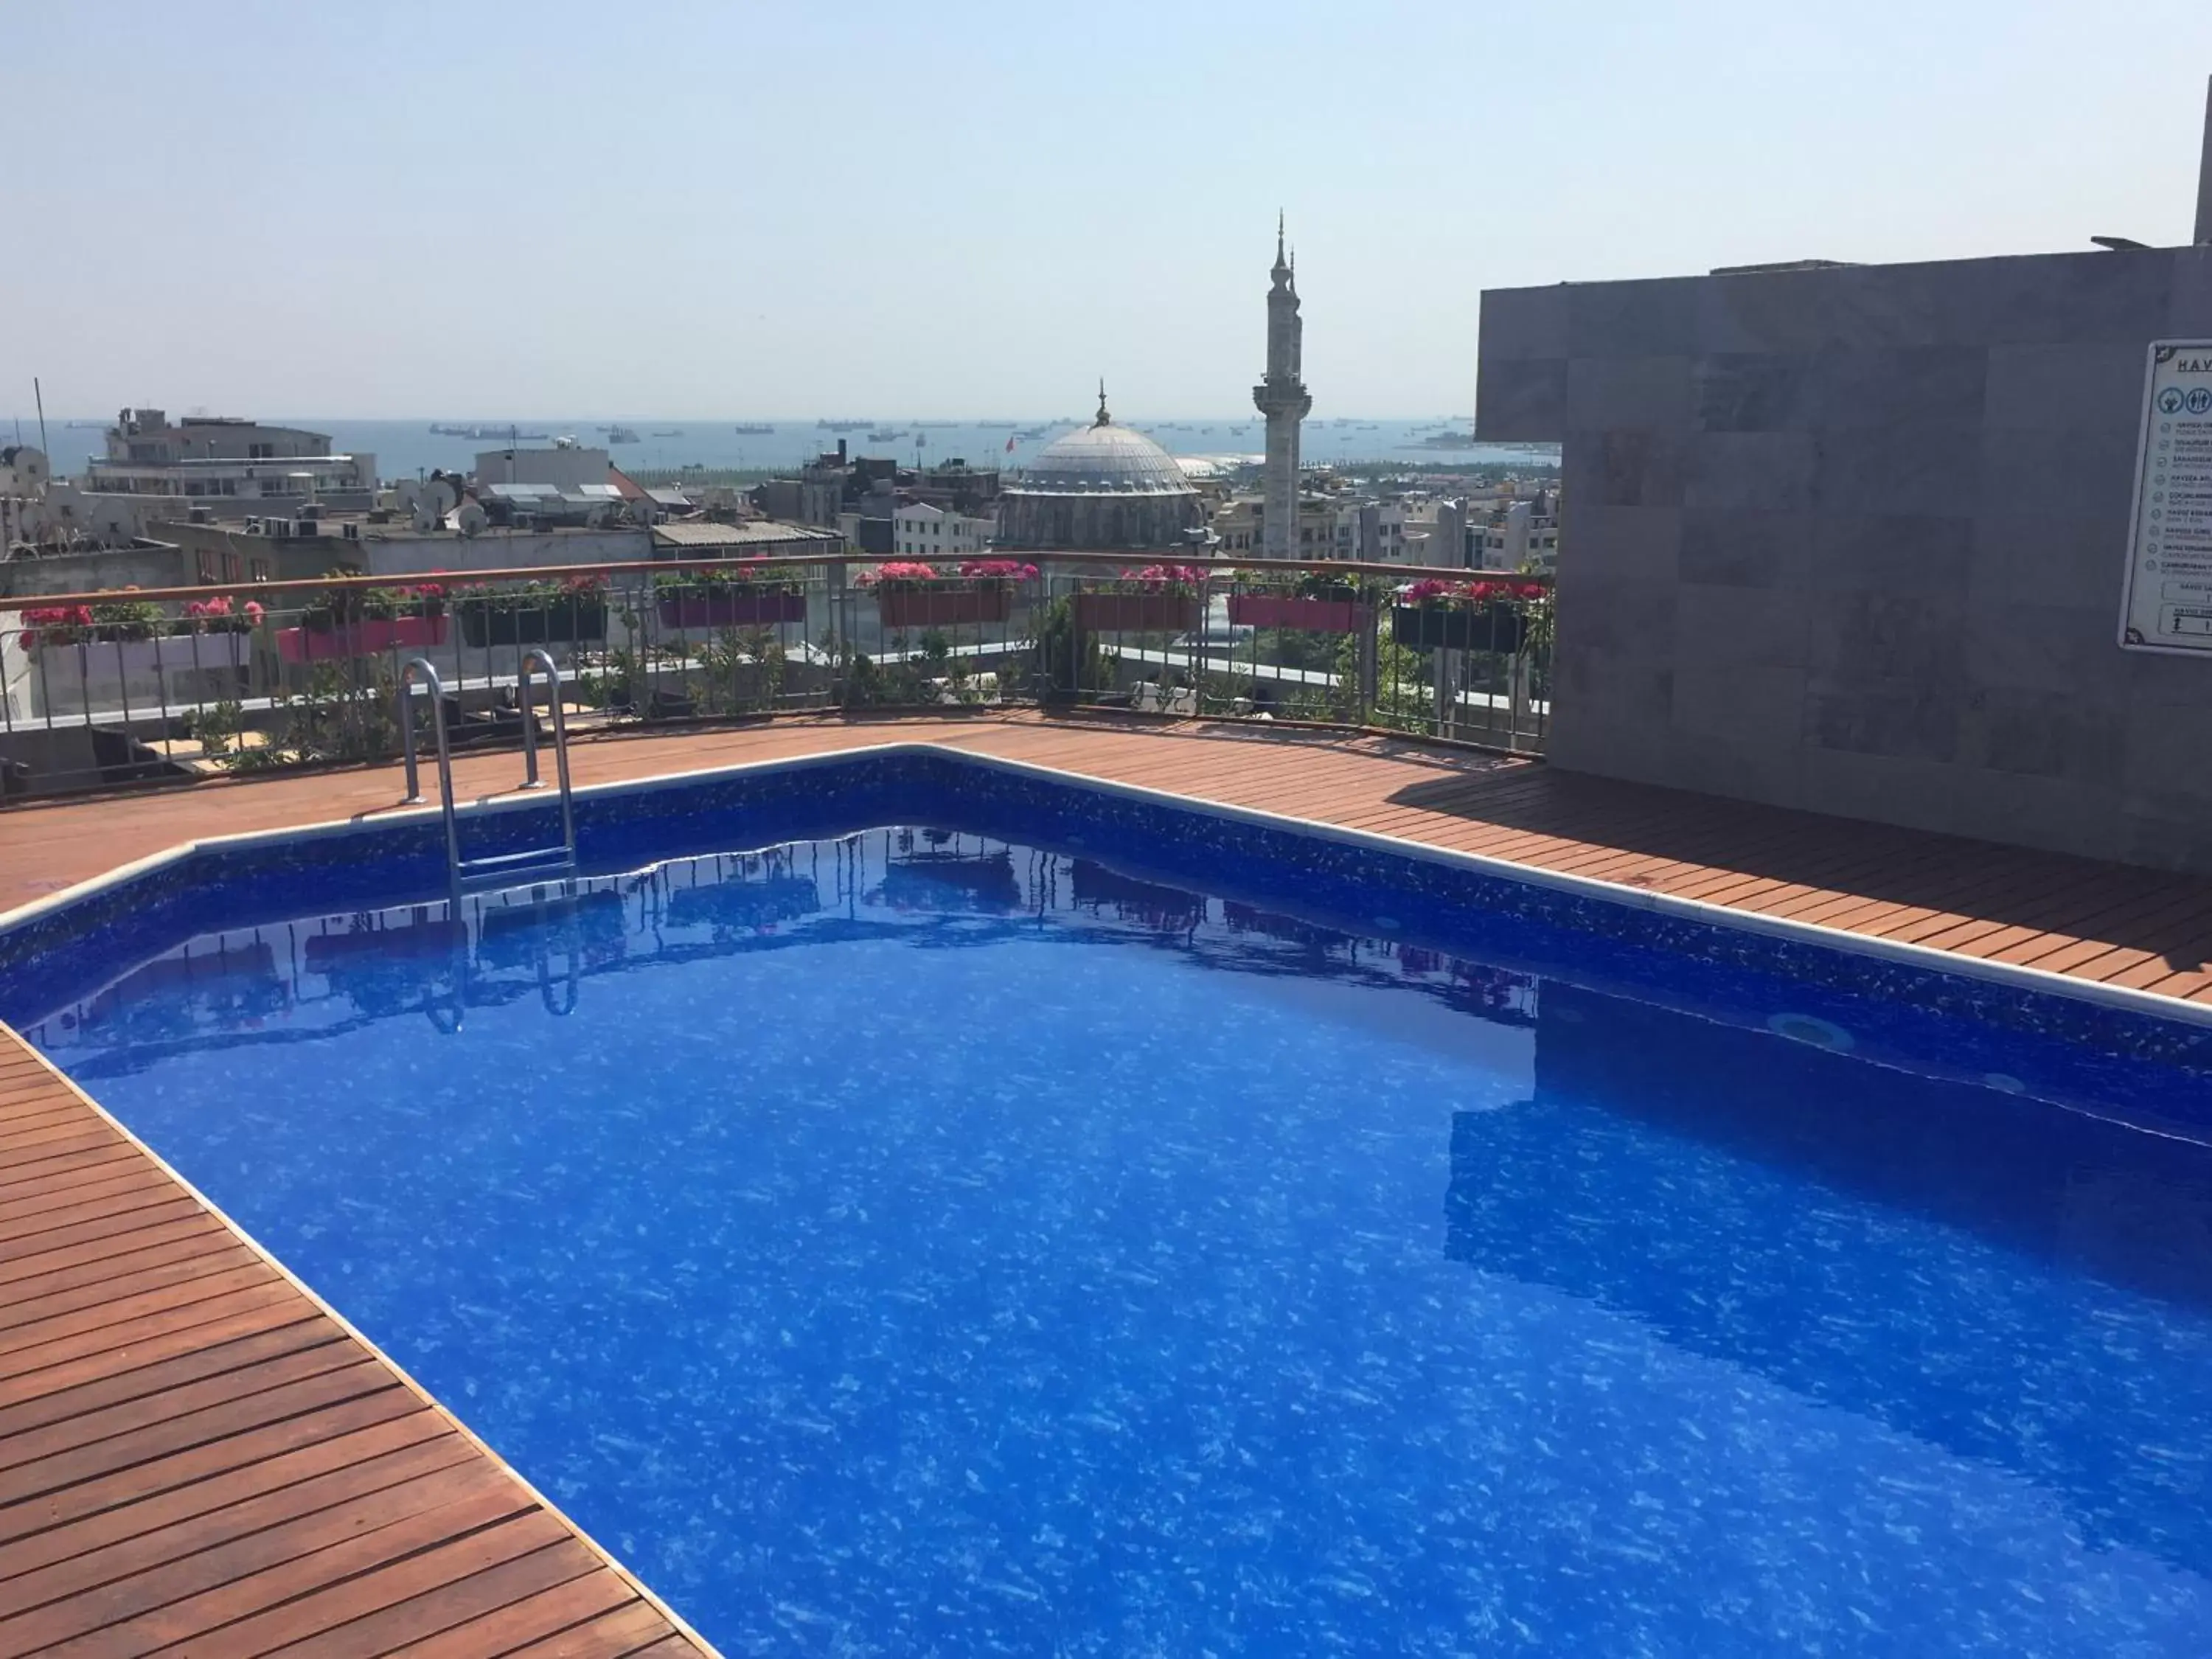 Balcony/Terrace, Swimming Pool in Laleli Gonen Hotel